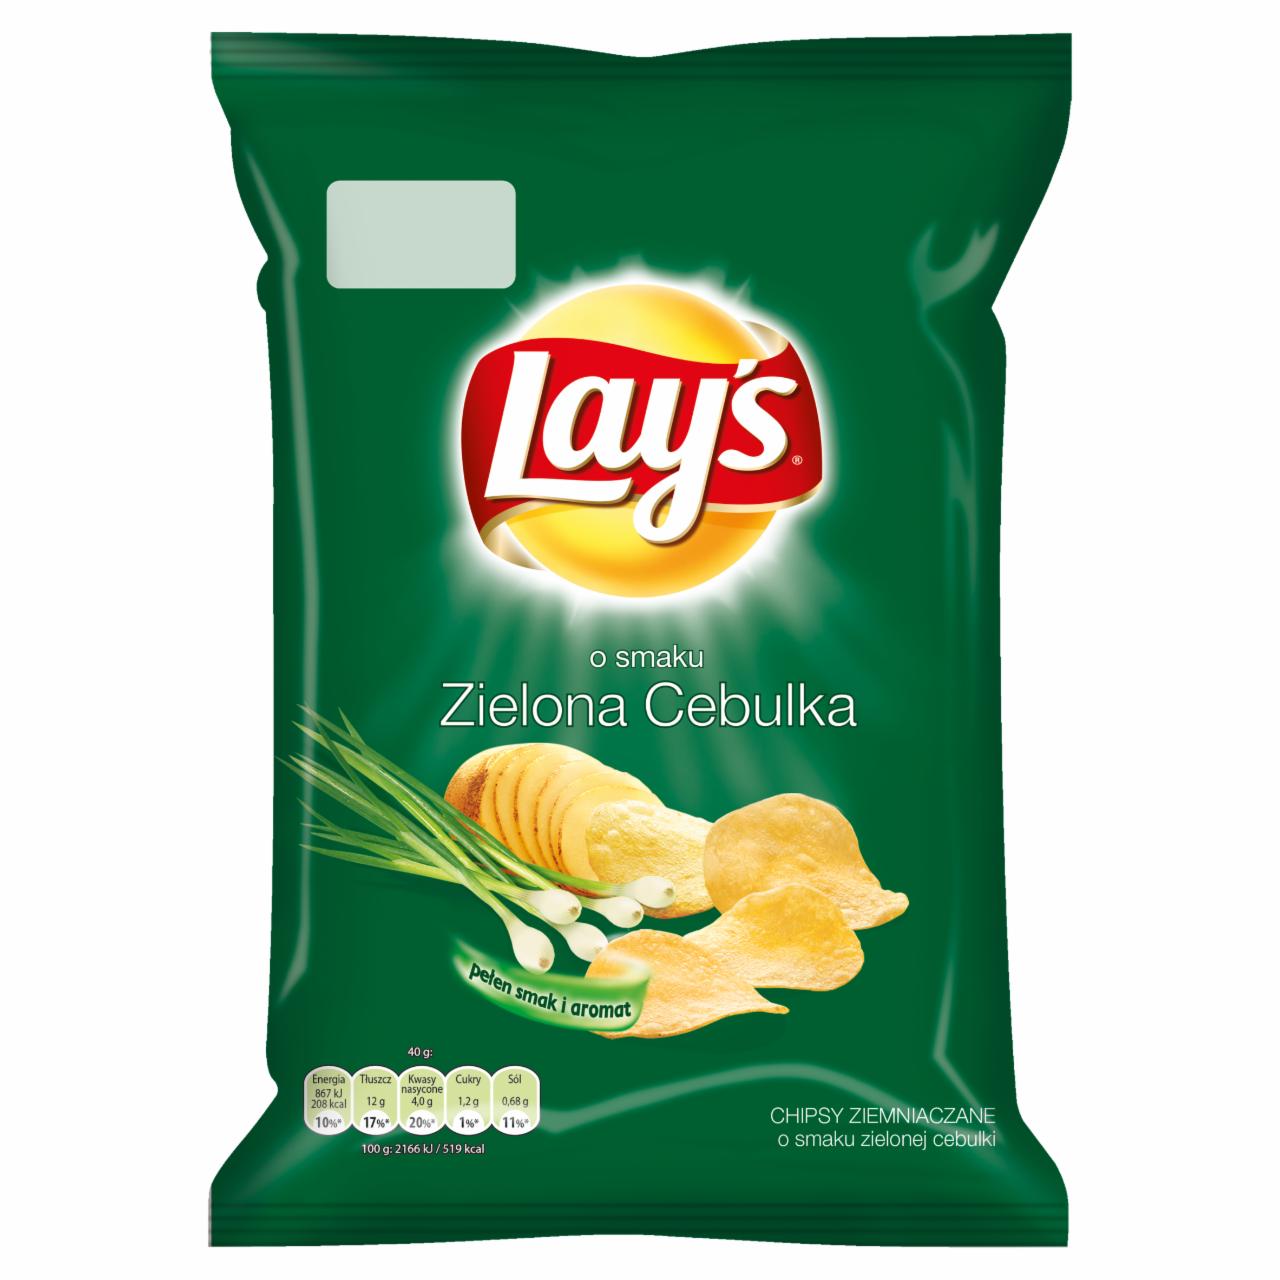 Zdjęcia - Lay's o smaku Zielona cebulka Chipsy ziemniaczane 40 g